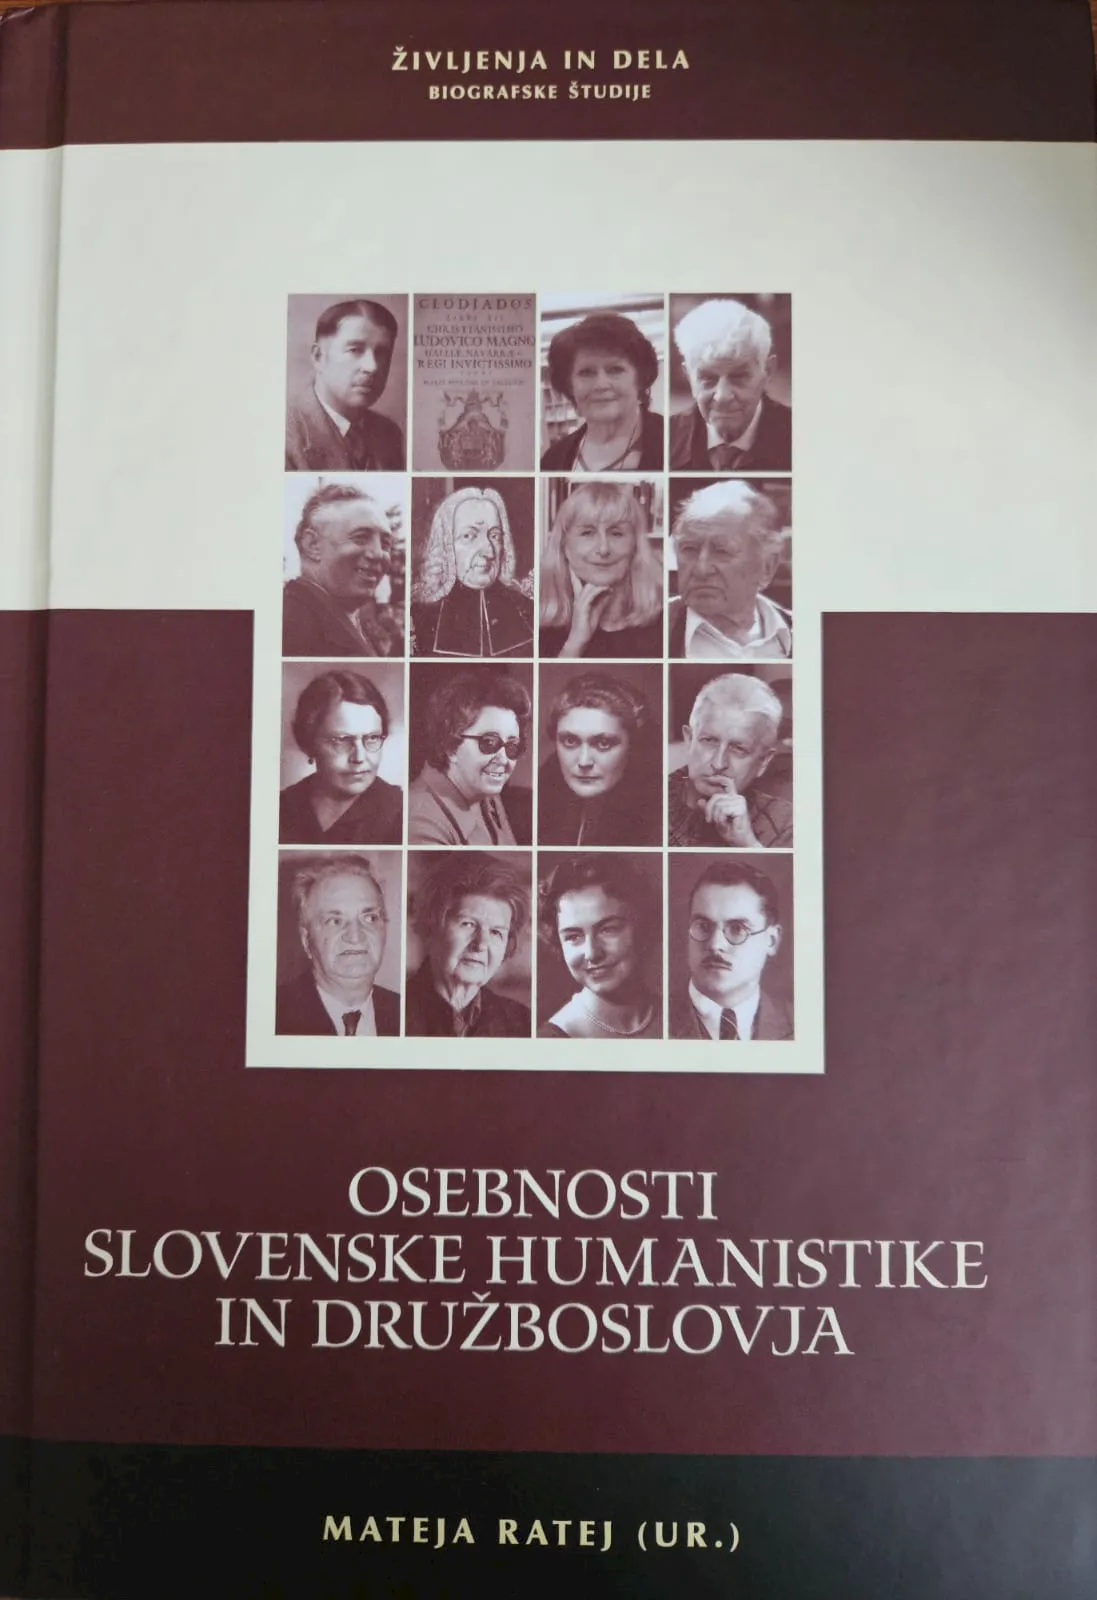 Izšla je knjiga Osebnosti slovenske humanistike in družboslovja, v kateri je poglavje o prof. dr. Vaneku Šiftarju napisala tudi red. prof. dr. Janja Hojnik